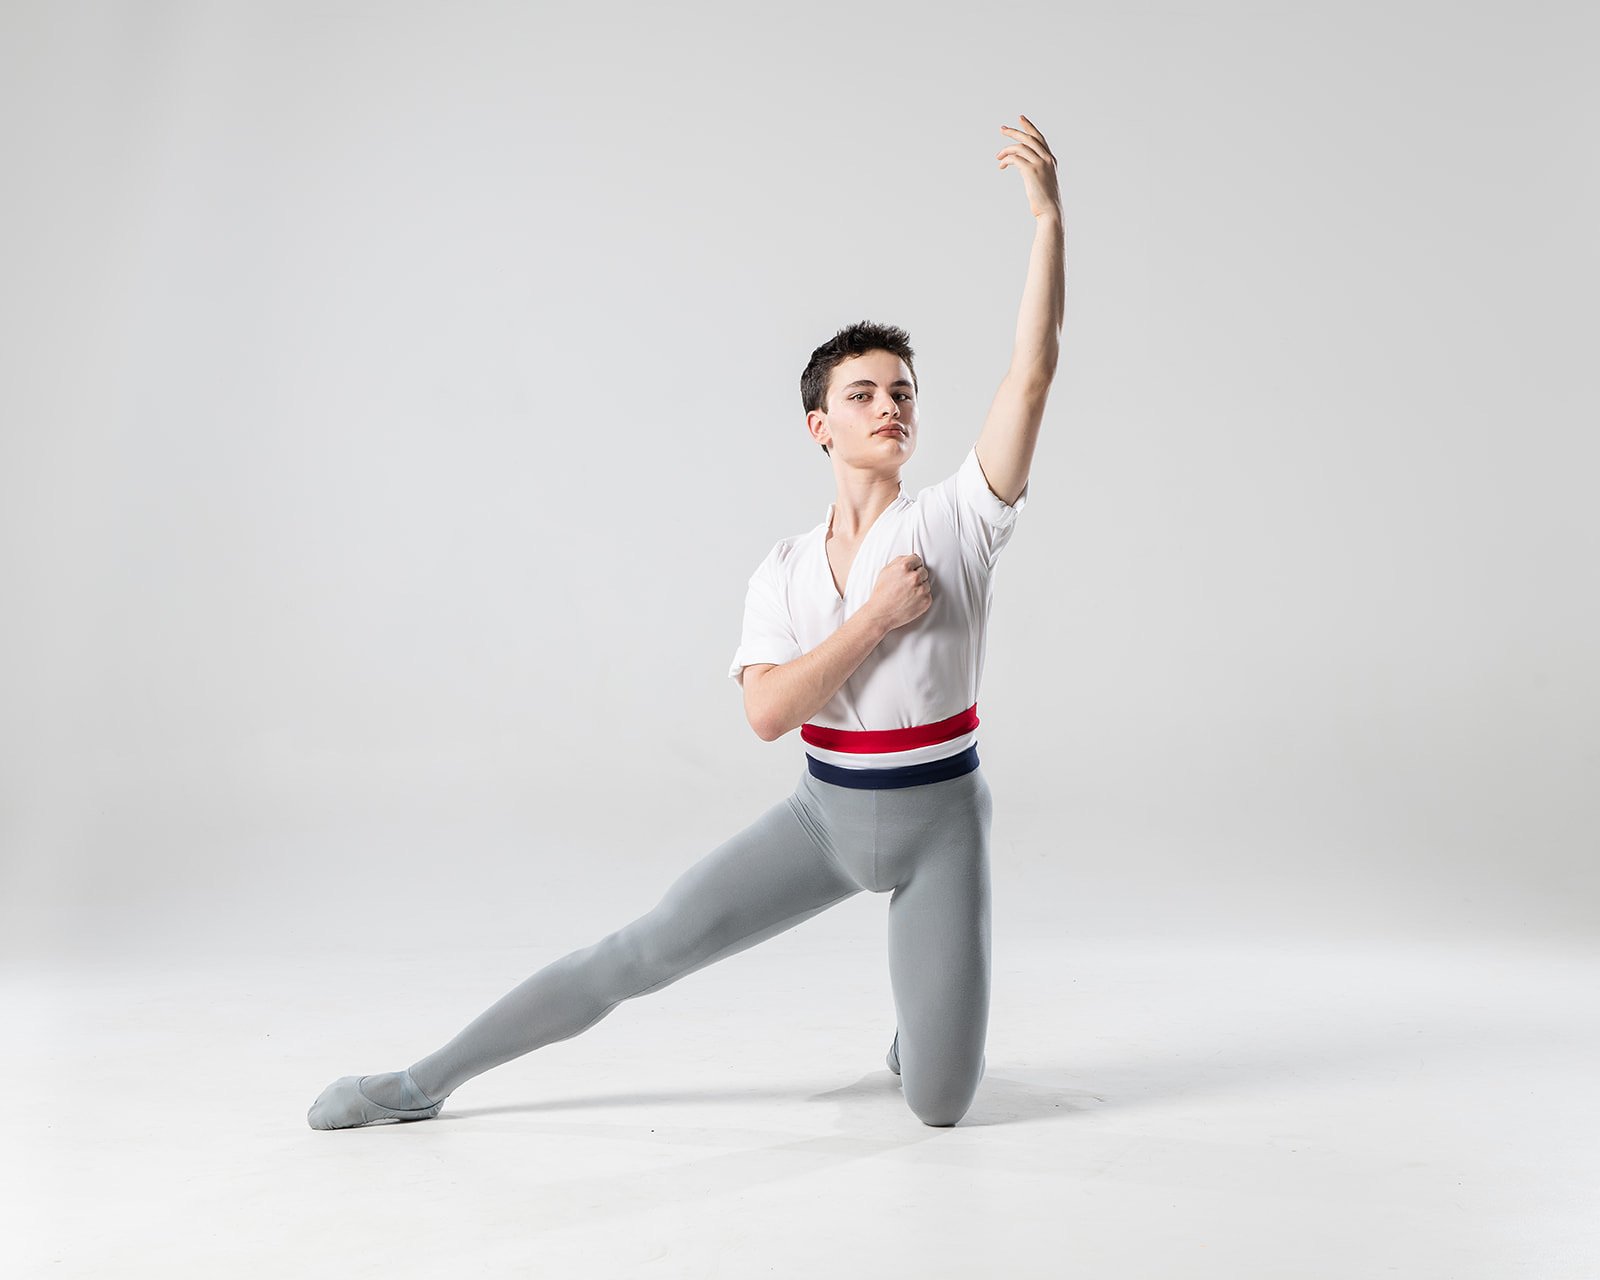 Ballet movement | Classical, Pointe & Pas de Deux | Britannica